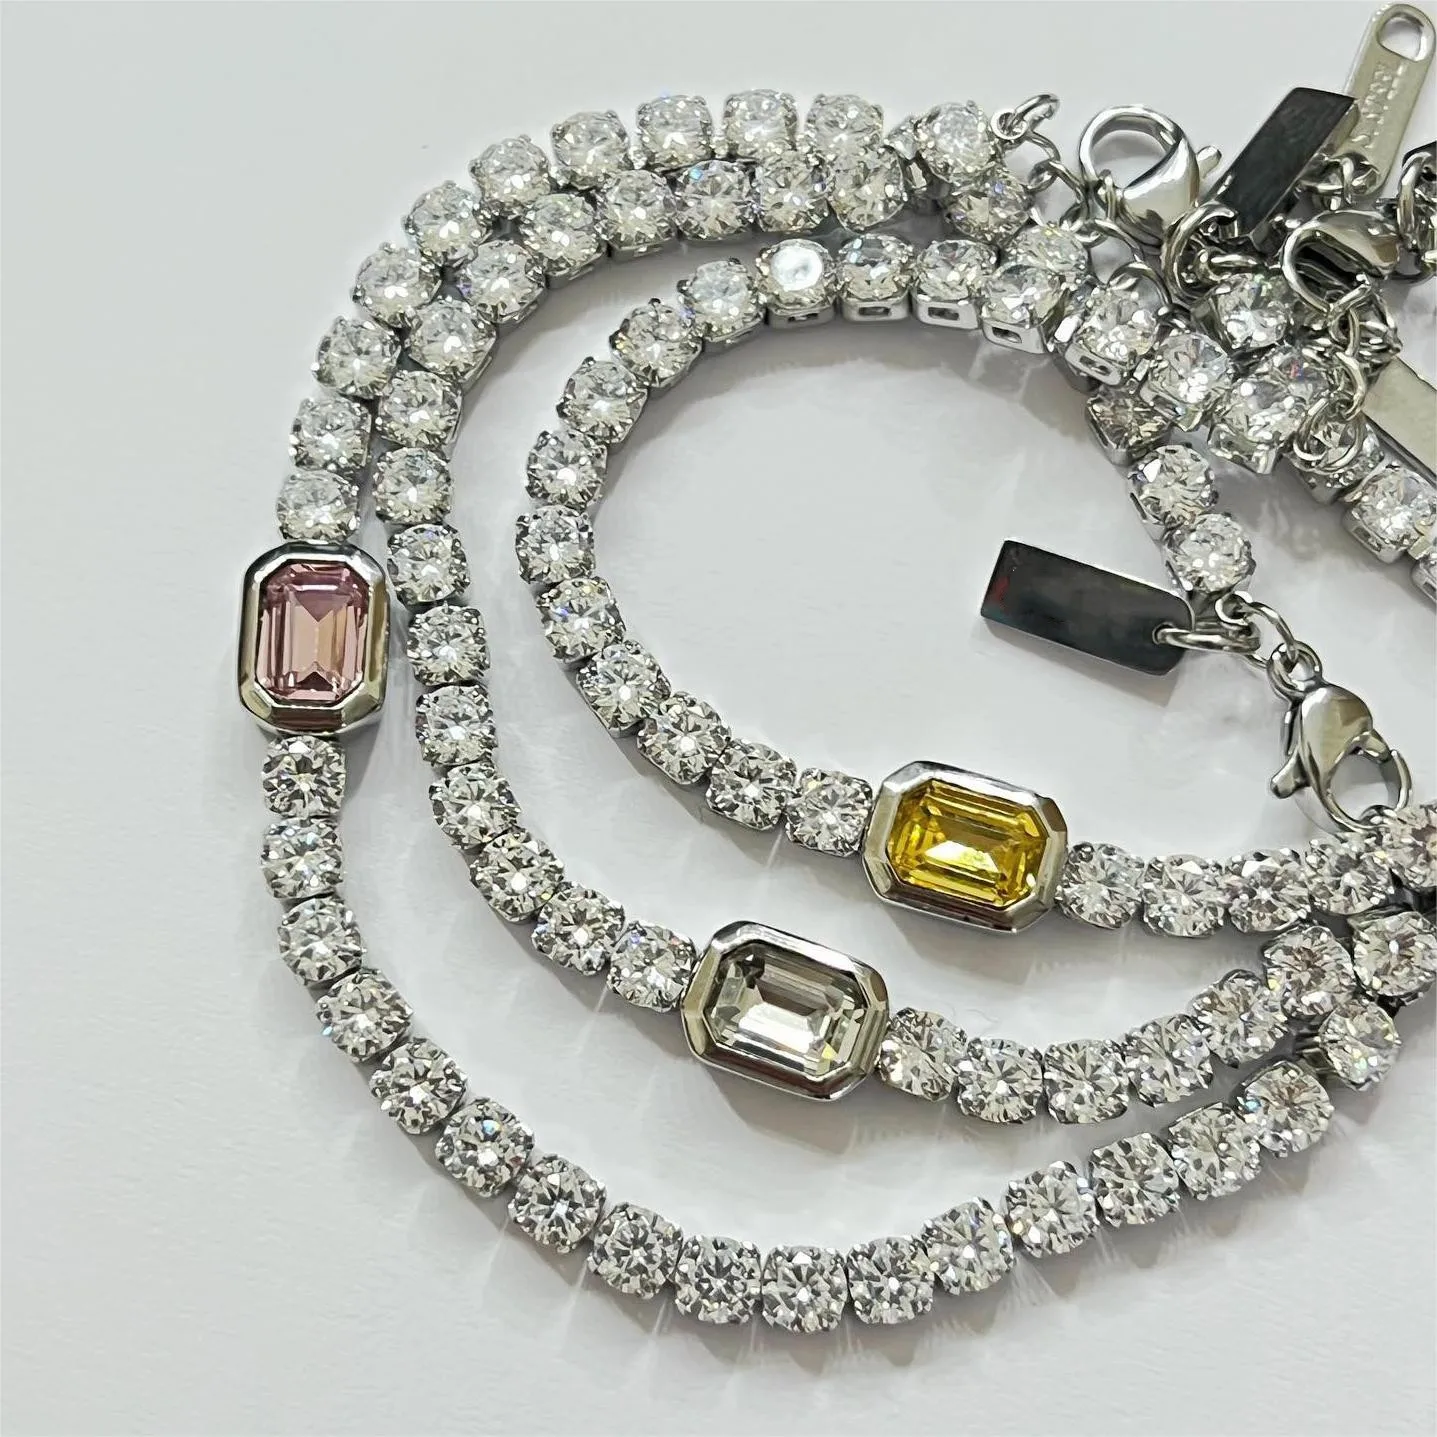 Tarnish free stainless steel full diamond zircon tennis chain bracelet for women